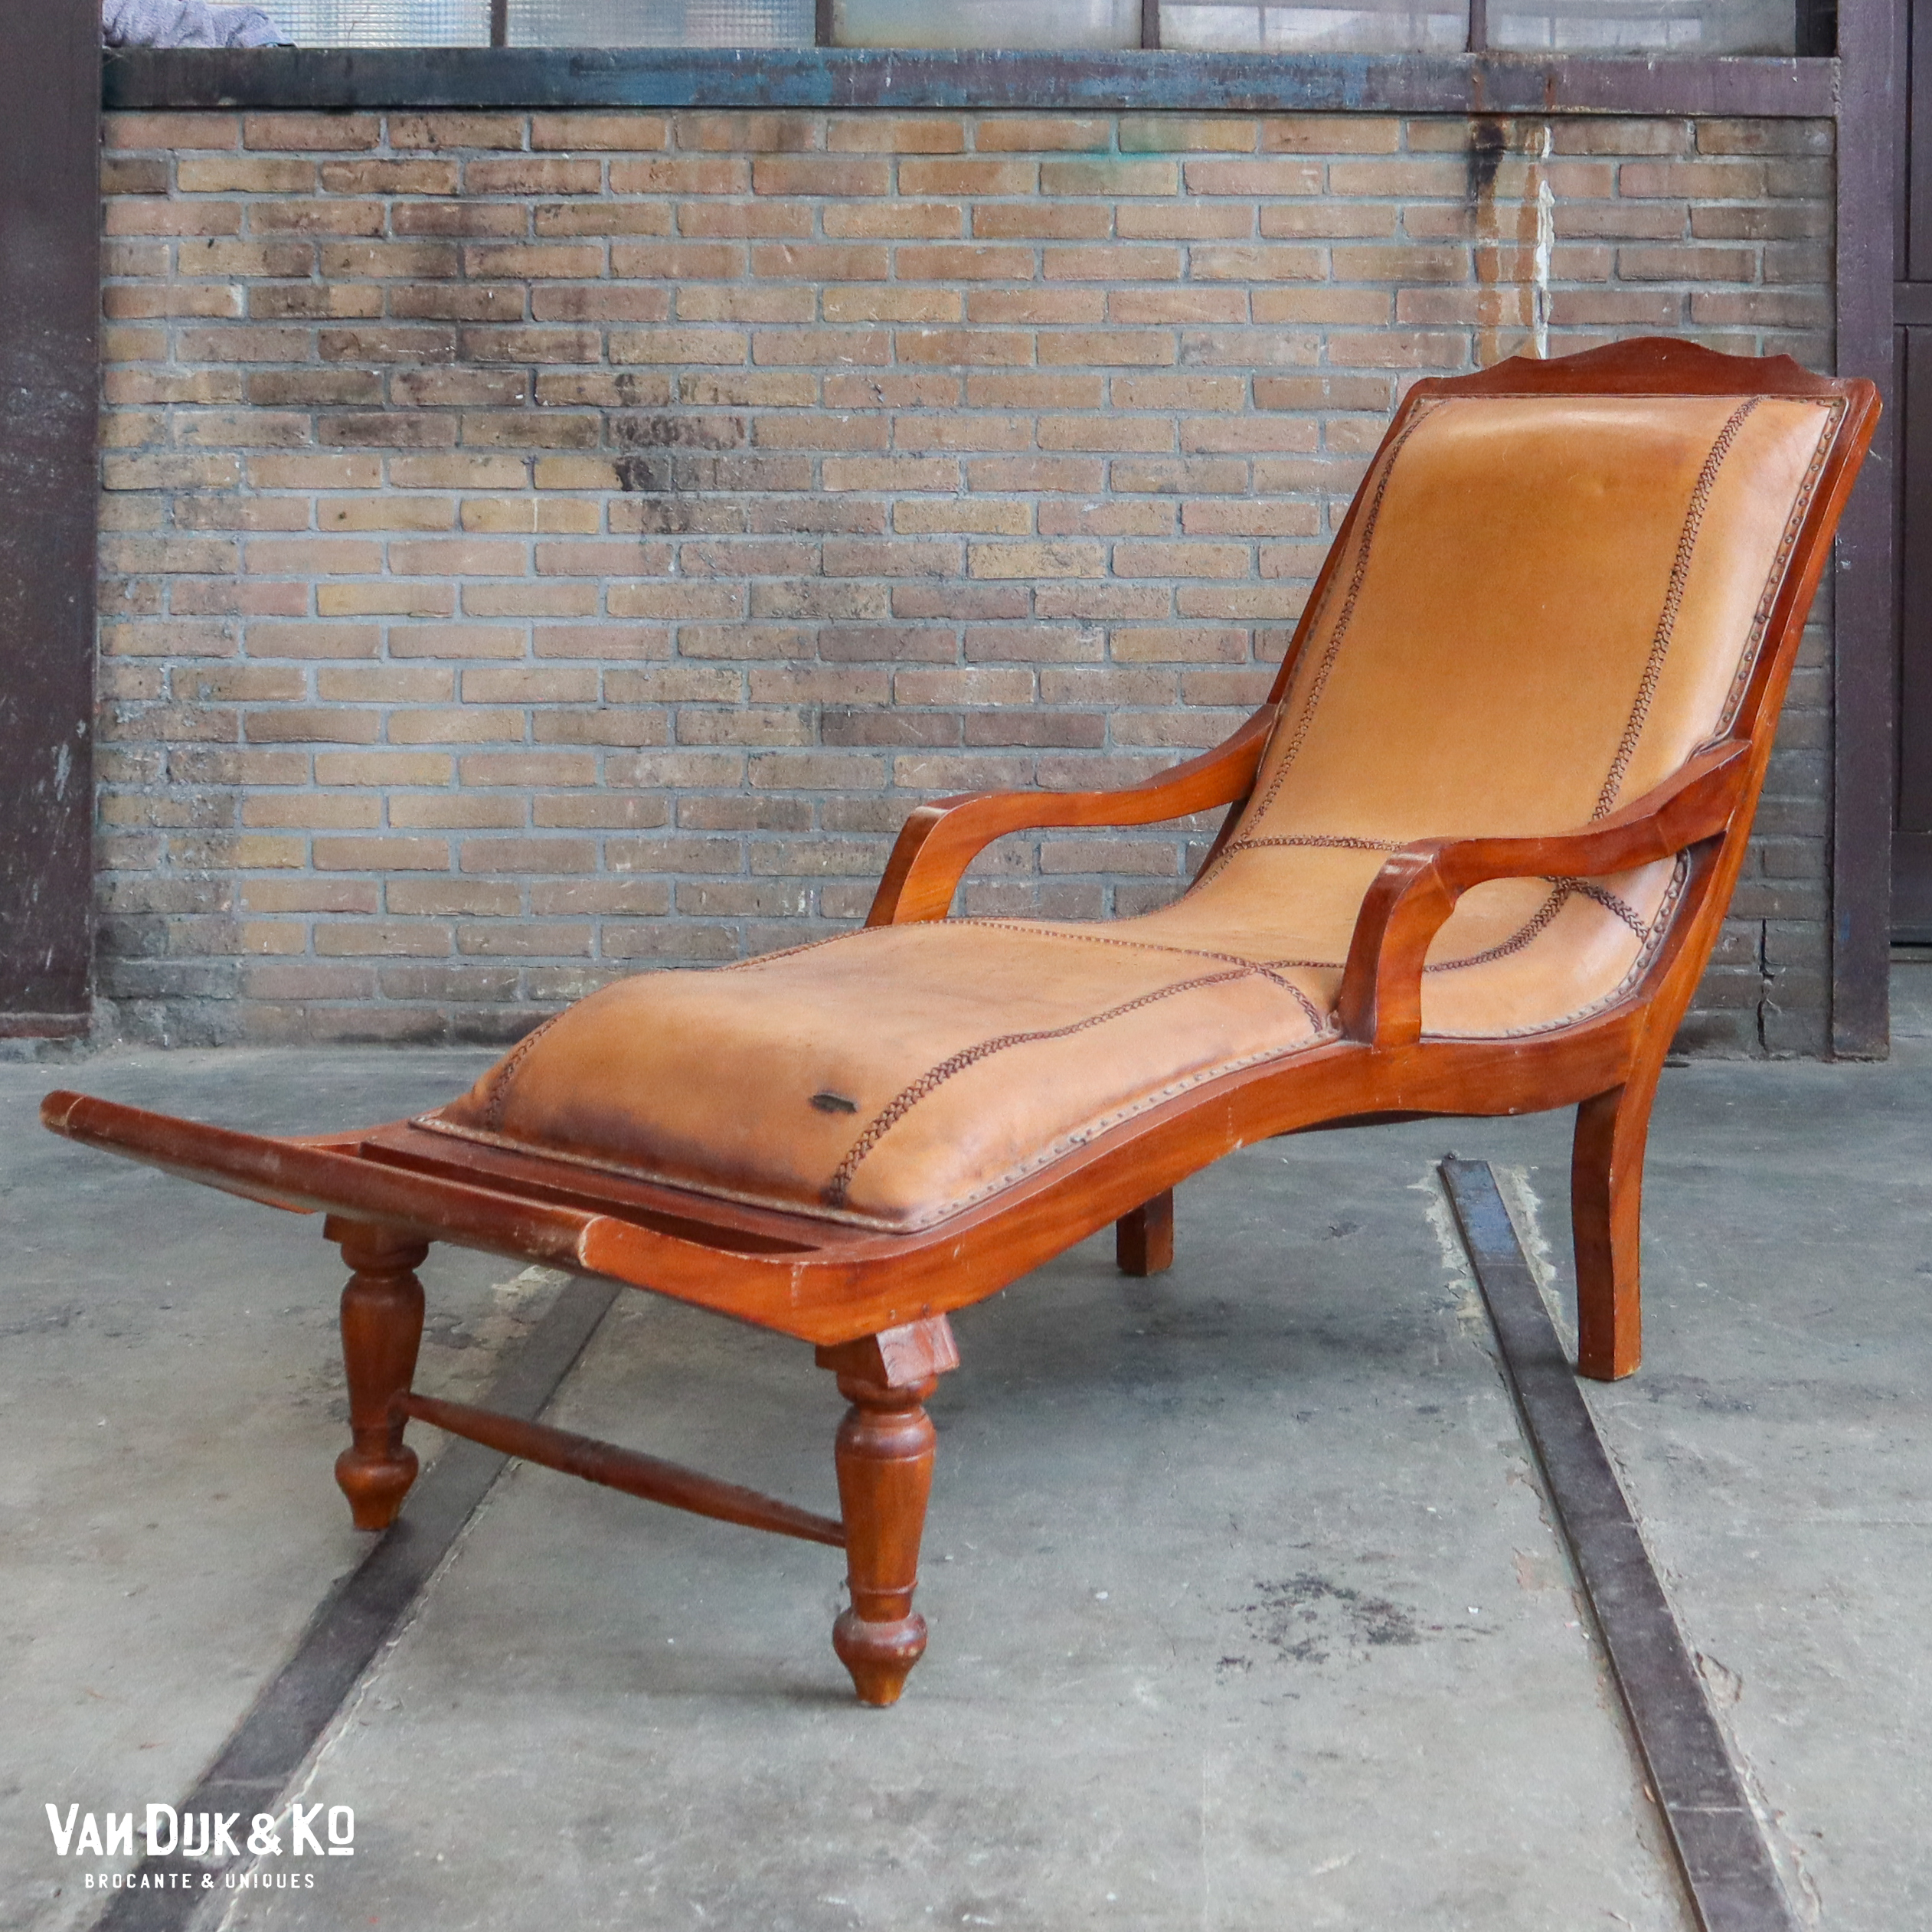 Portier Overtollig Ontwaken Vintage schaapsleren ligstoel » Van Dijk & Ko